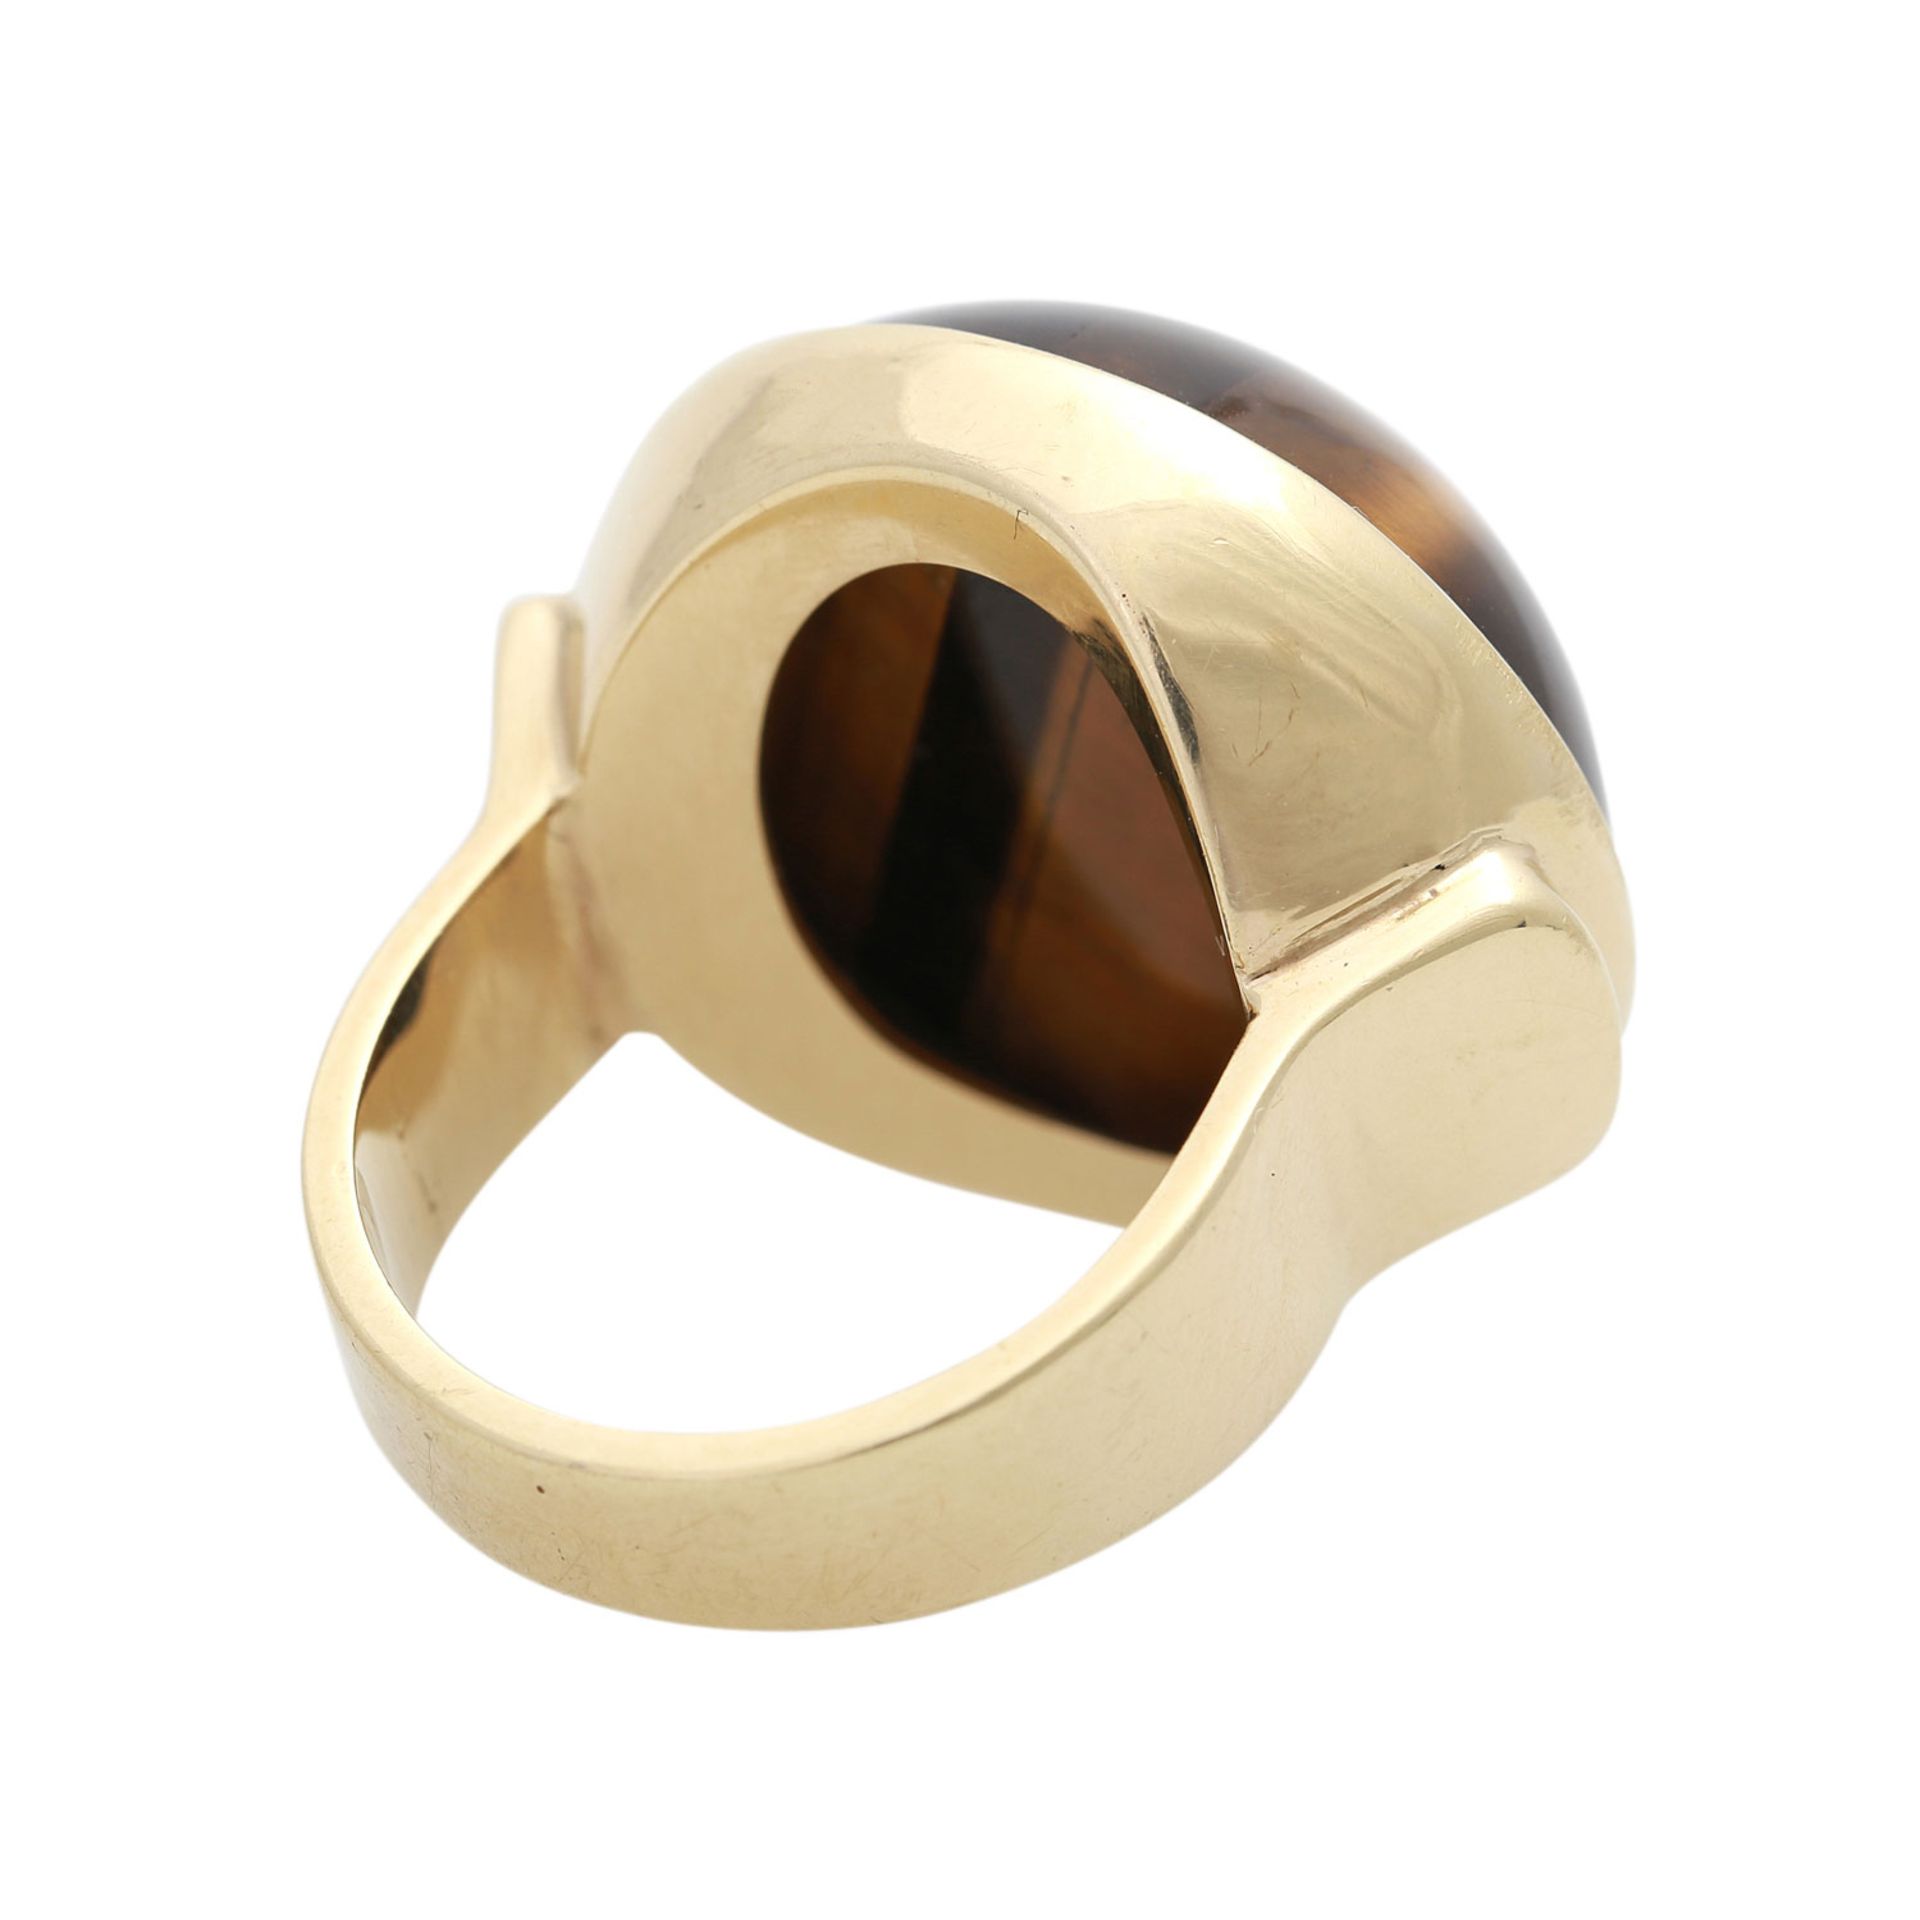 Ring mit großem Tigerauge-Cabochon,D: ca. 22 mm, GG 14K, 17,9 gr, RW 54, HANDARBEIT, - Bild 3 aus 4